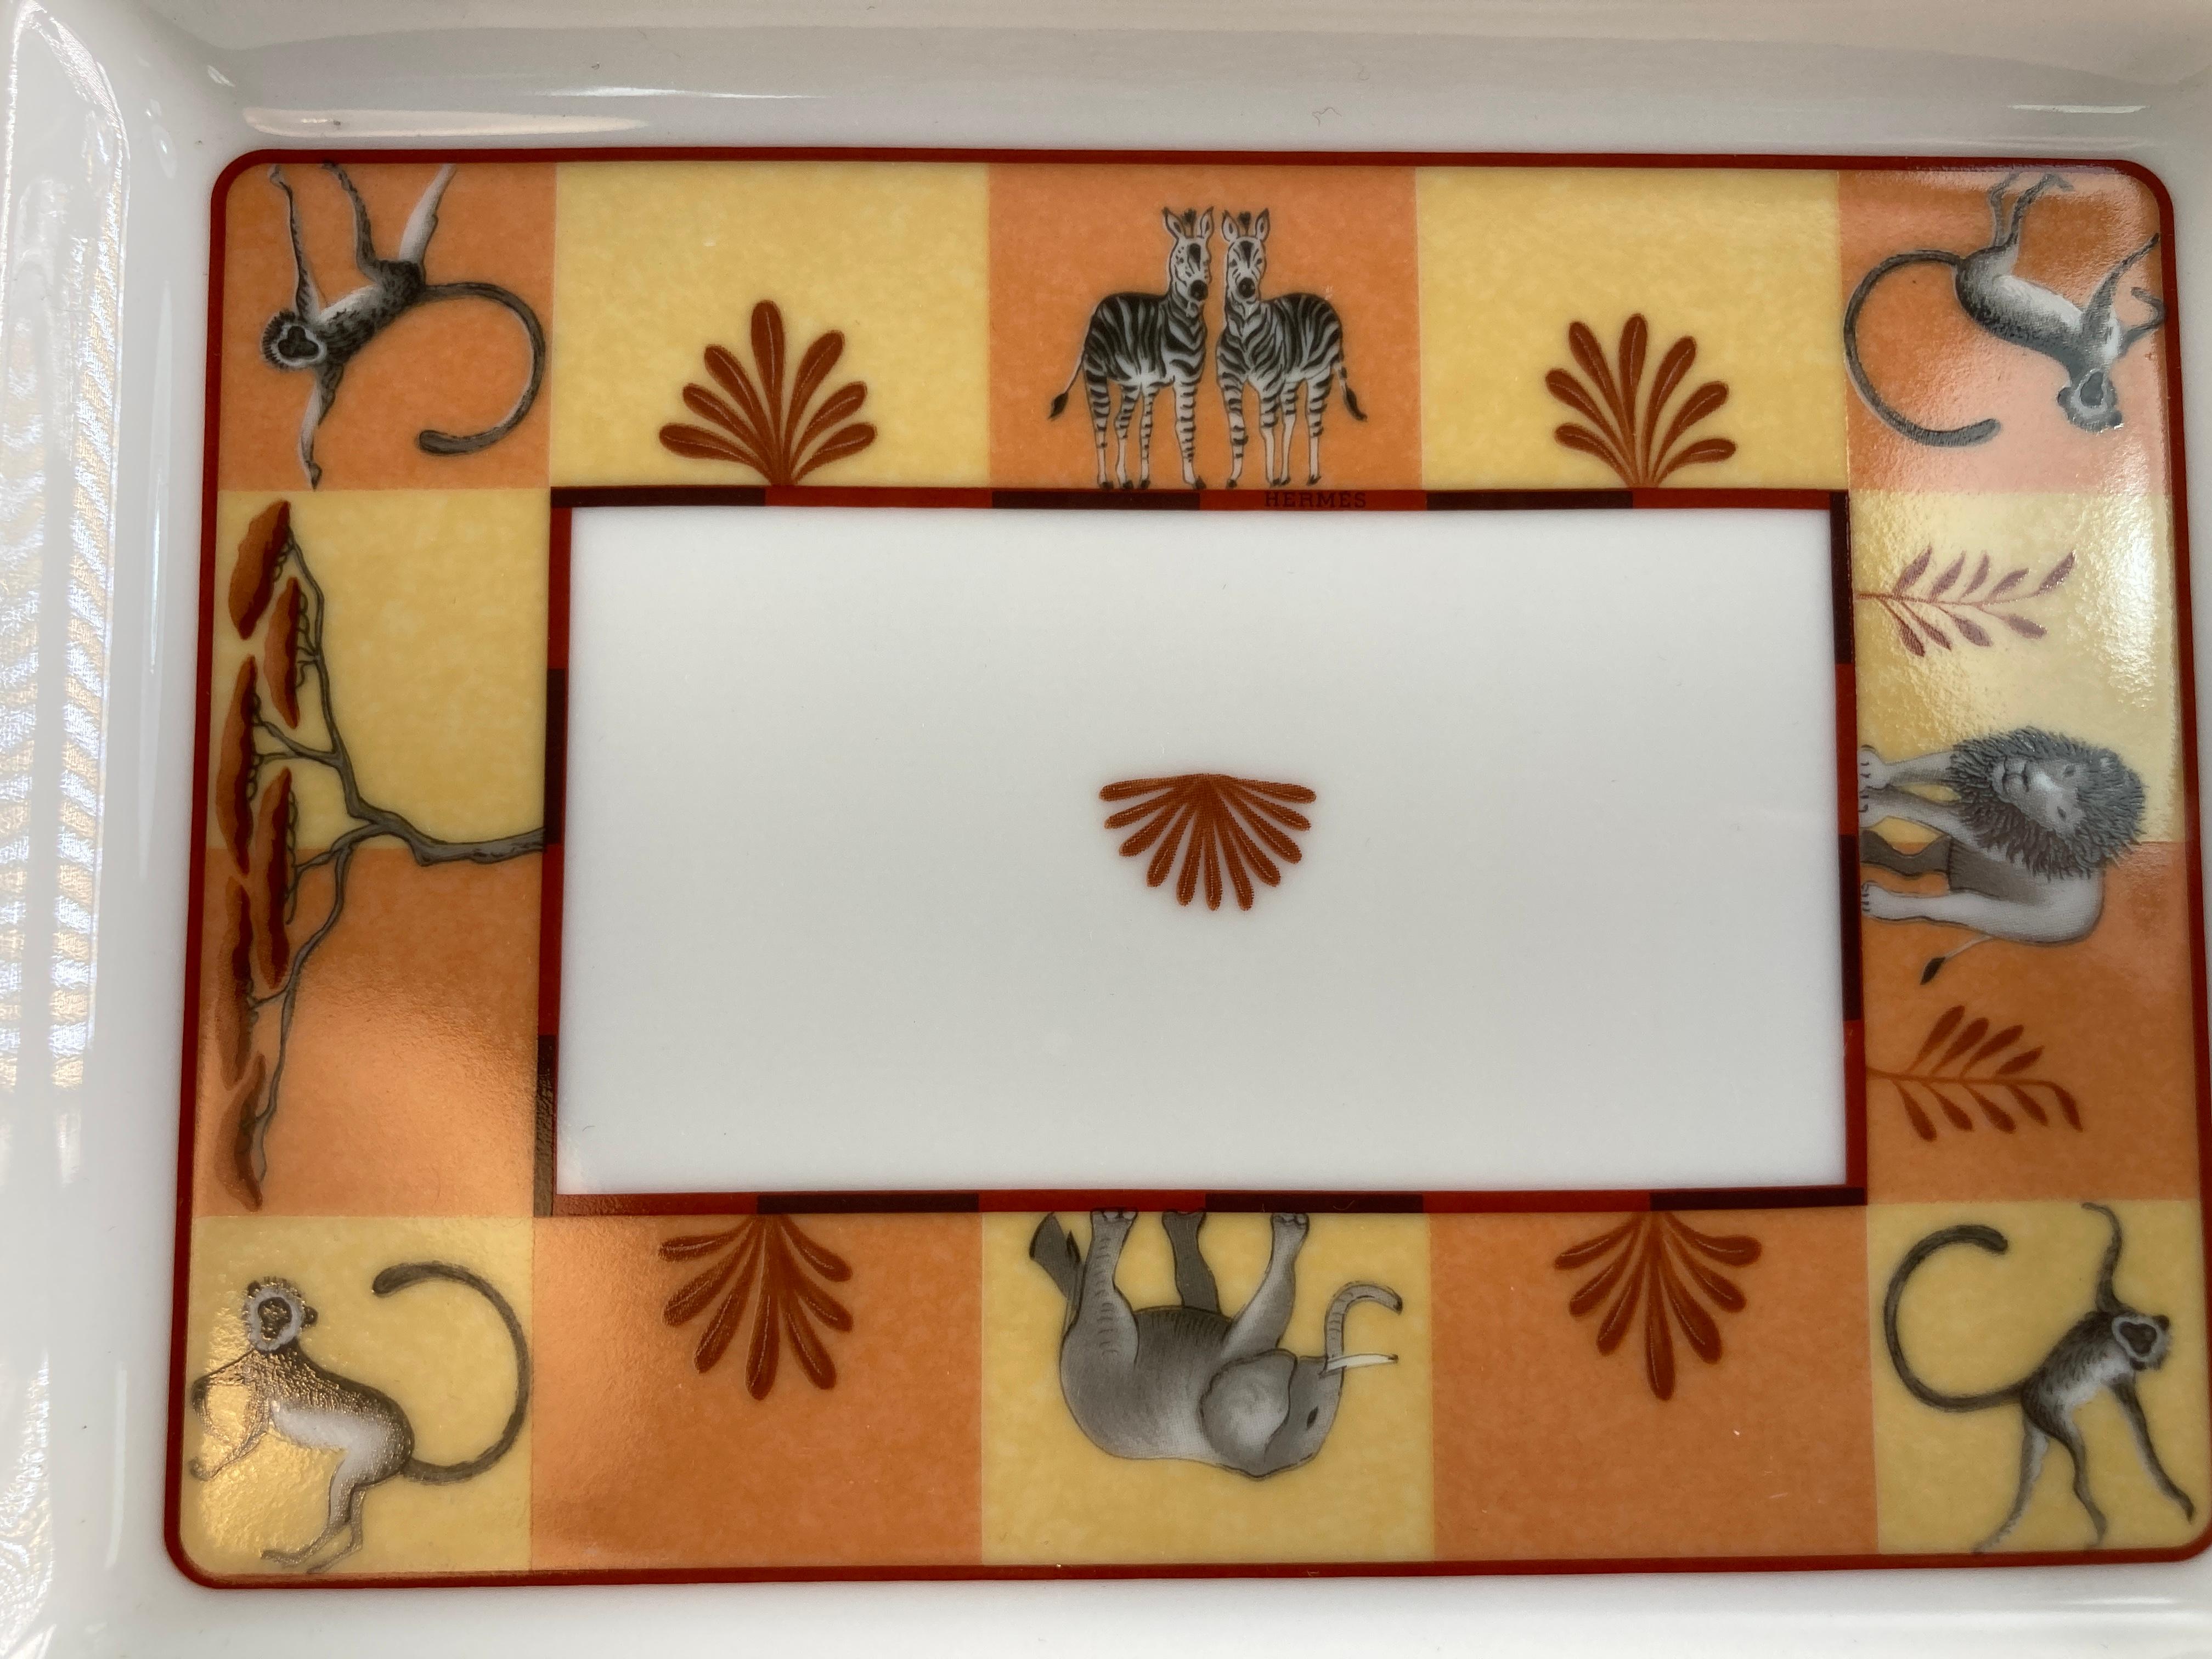 Hand-Crafted Hermes Porcelain Trinket Dish with Africa Orange Safari Design